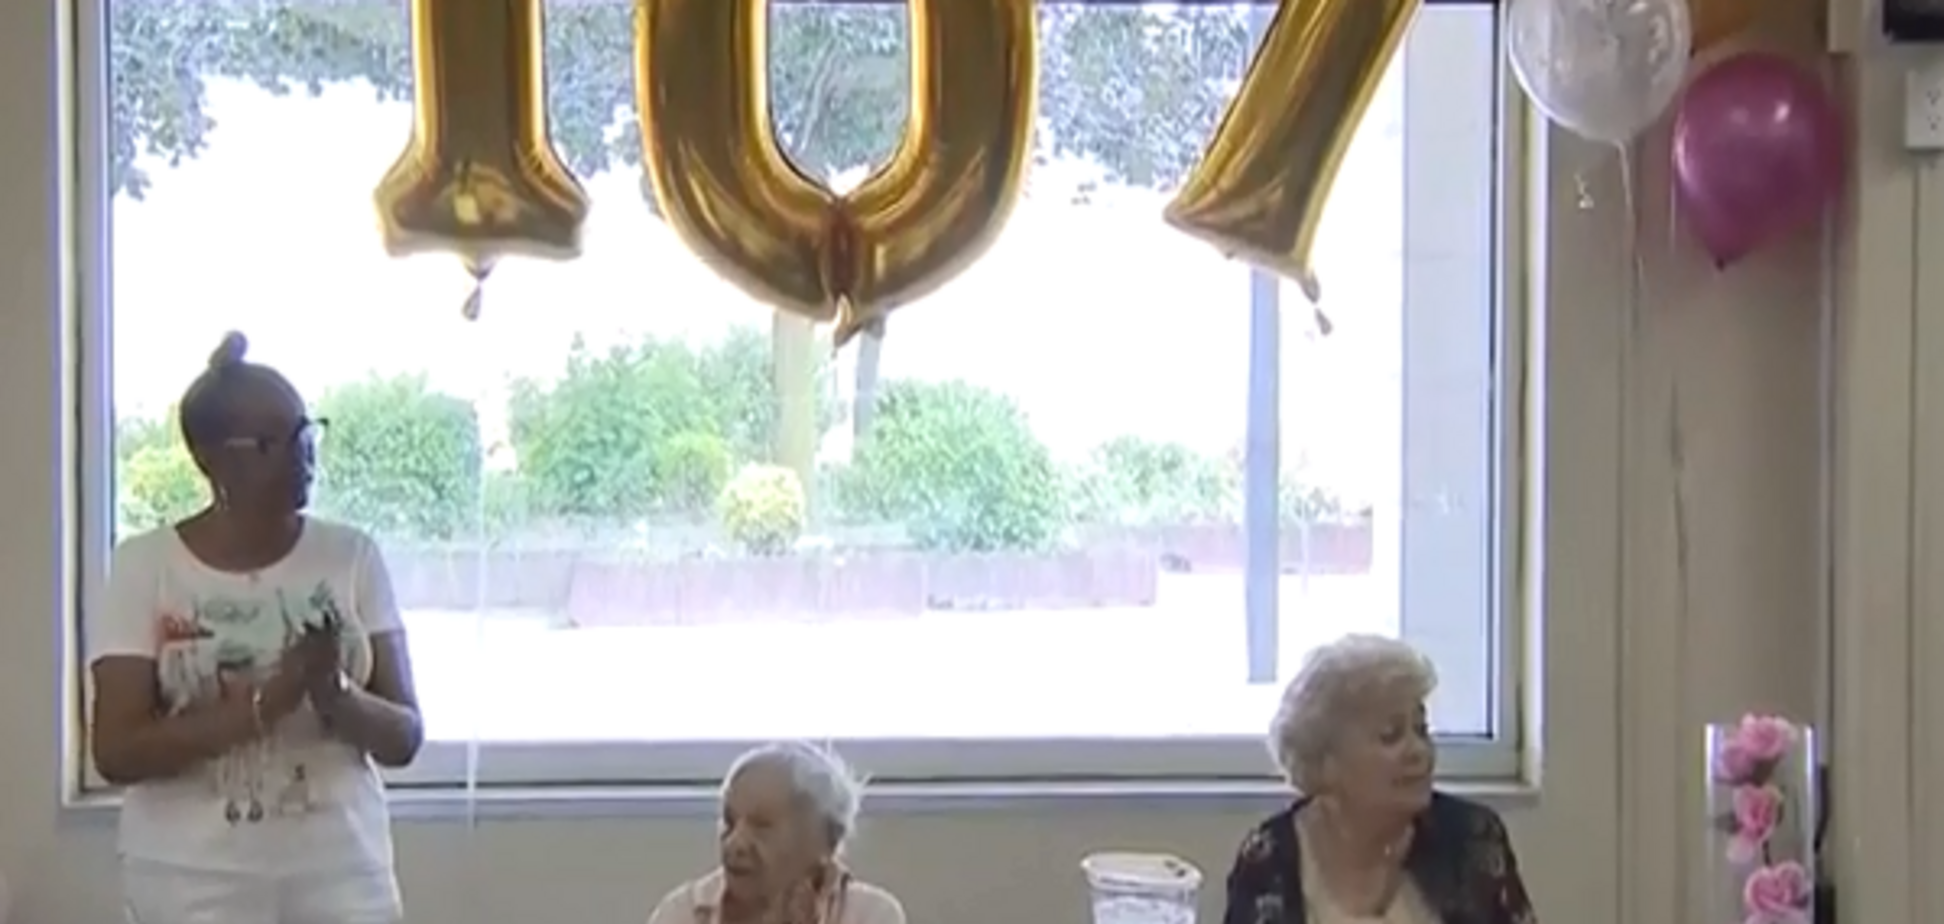 Сестрам 102 и 107 лет: долгожительницы раскрыли свой необычный секрет